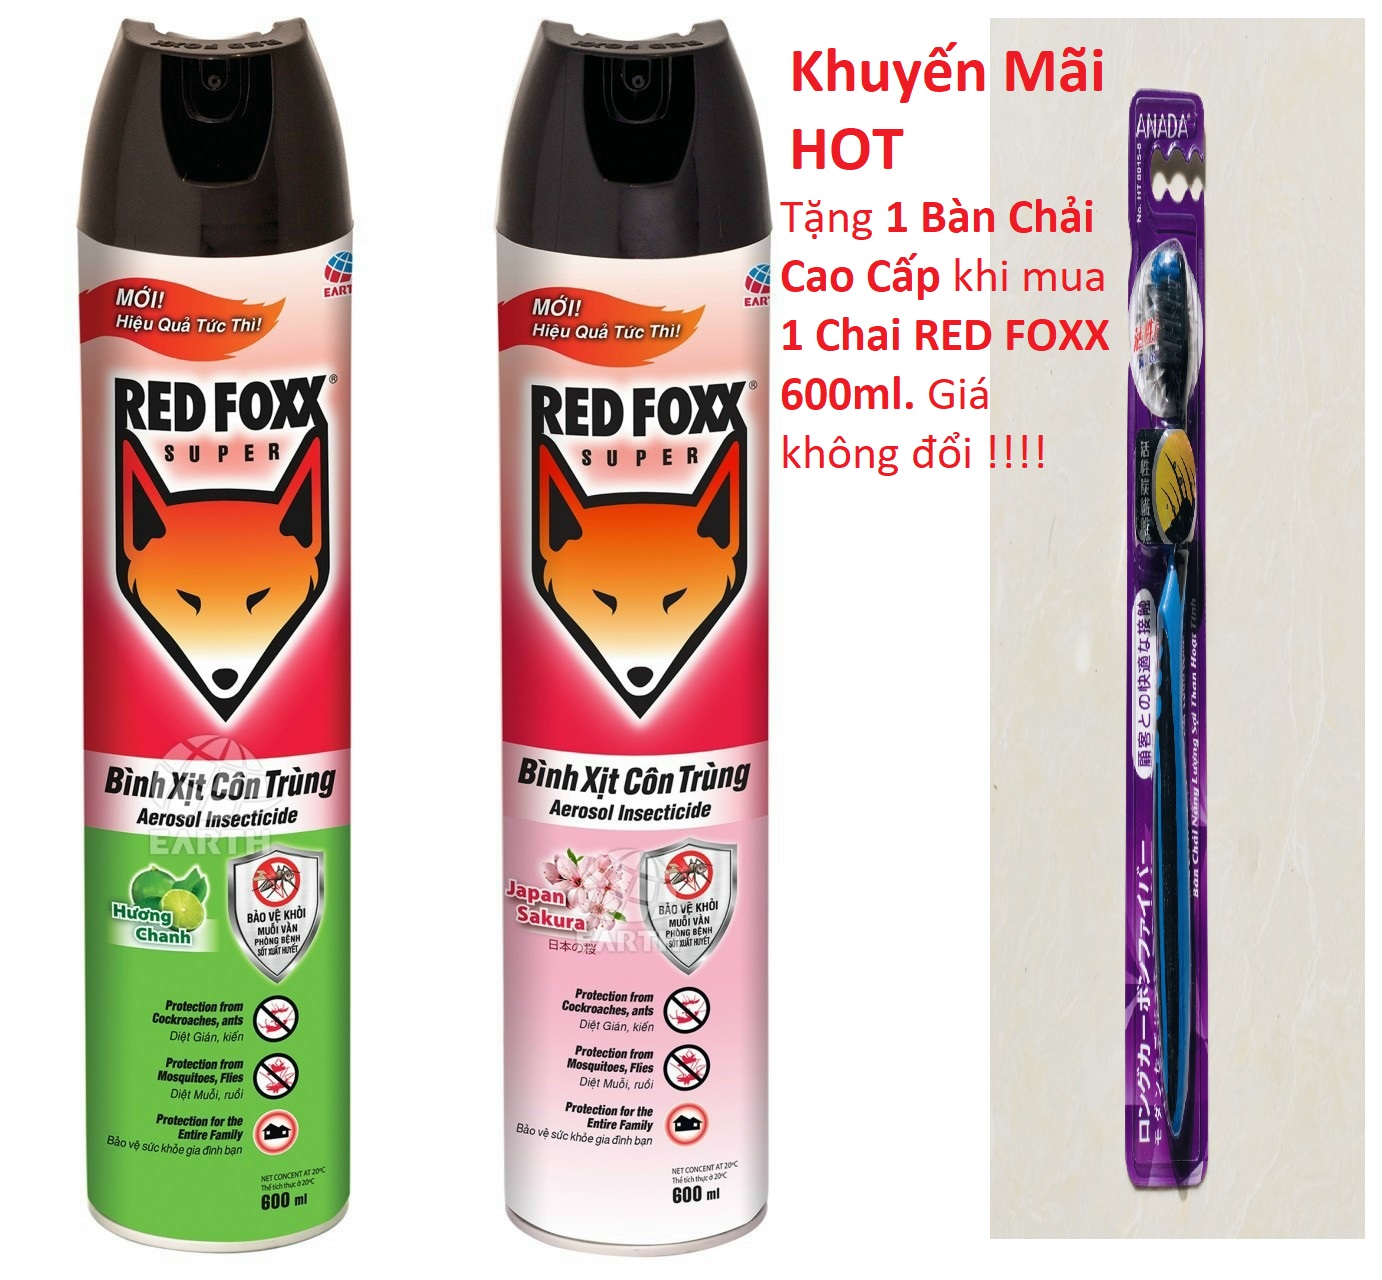 HOT Tặng thêm Bàn Chải Cao Cấp Bình xịt côn trùng RED FOXX - Có 3 Hương